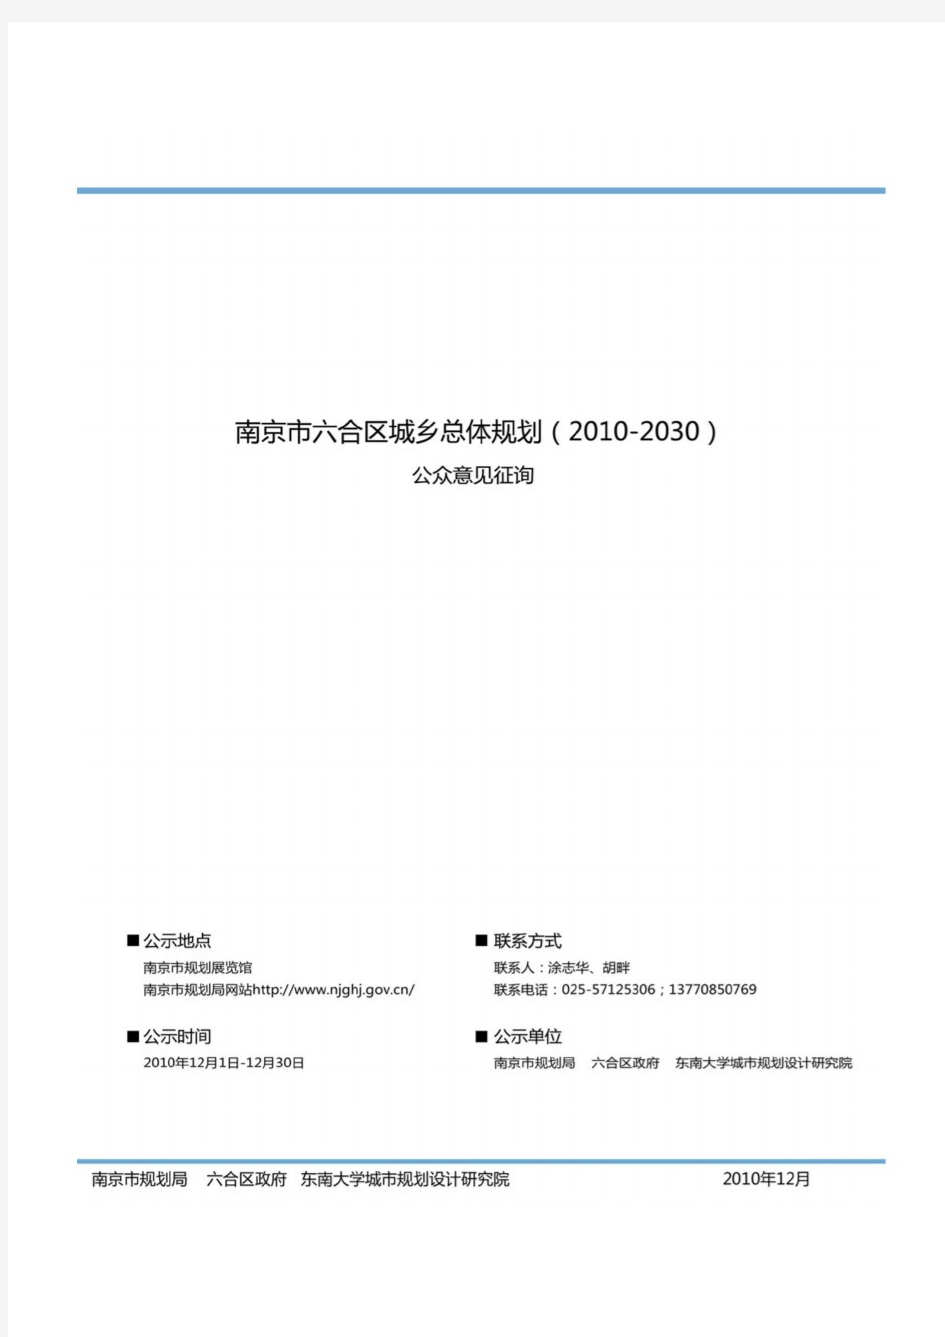 南京市六合区总体规划(2010-2030)